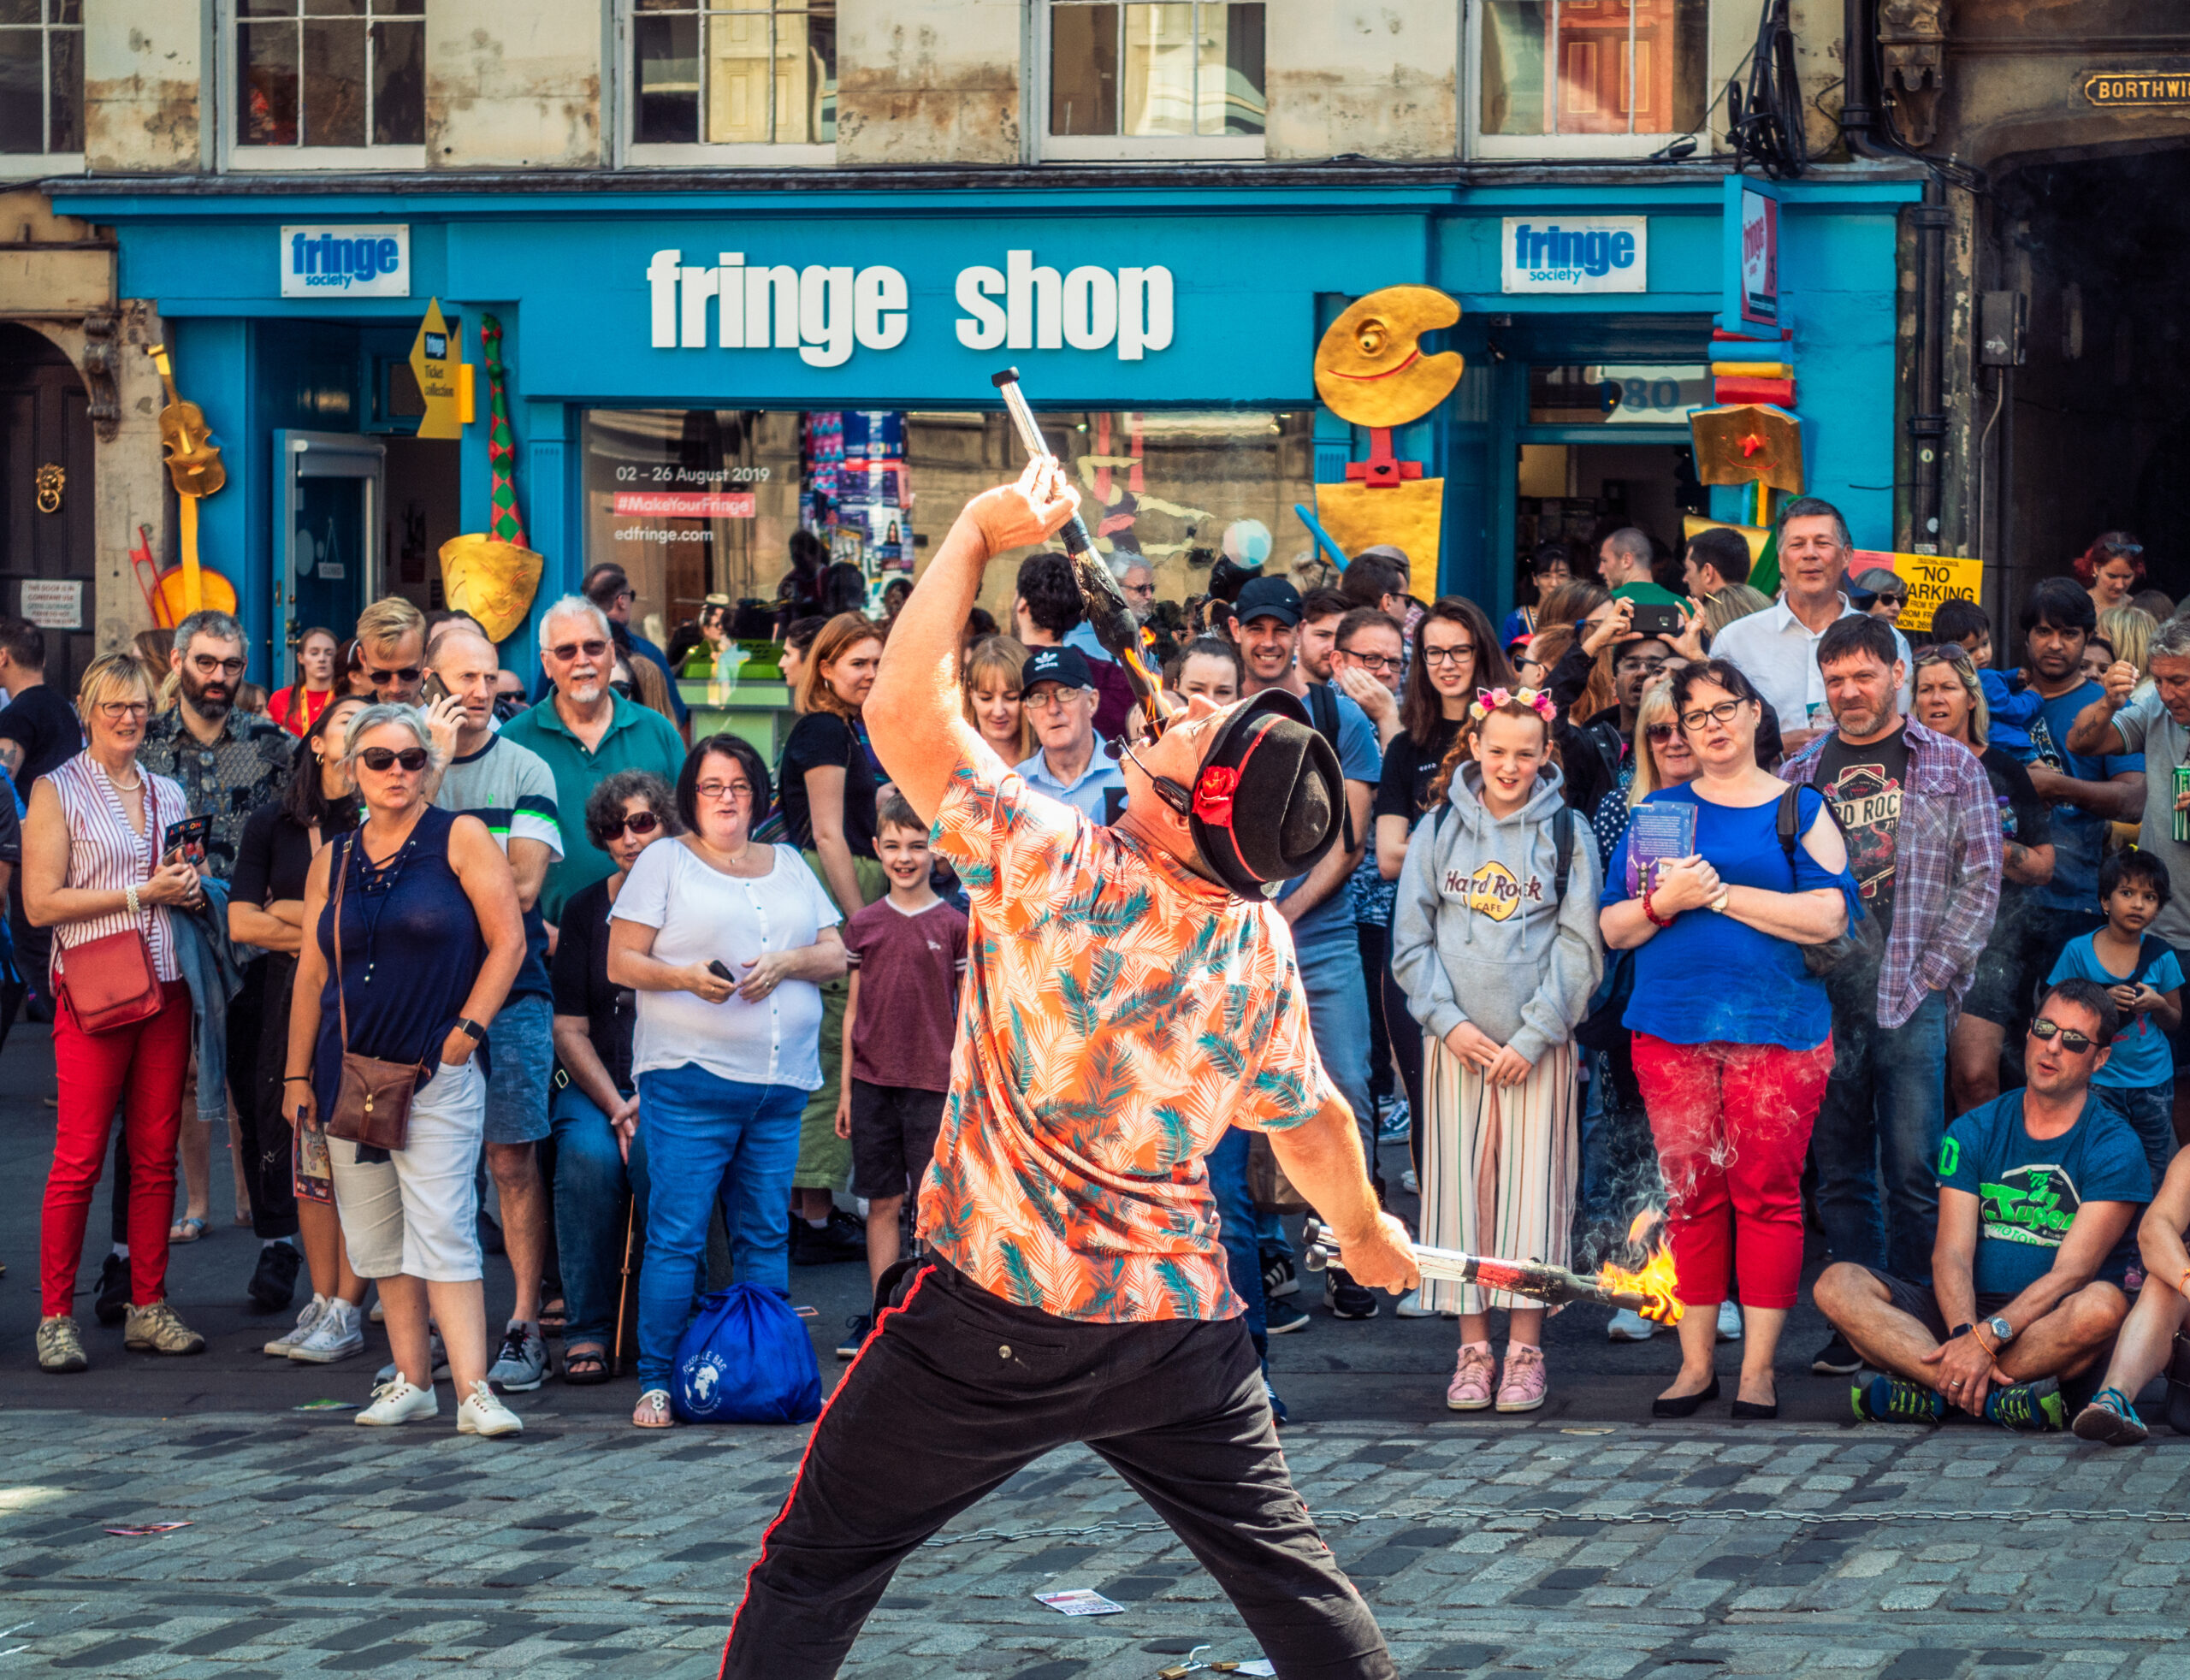 Fire-eating street performer at the Edinburgh Fringe Festival (Photo Credit: georgeclerk / iStock)